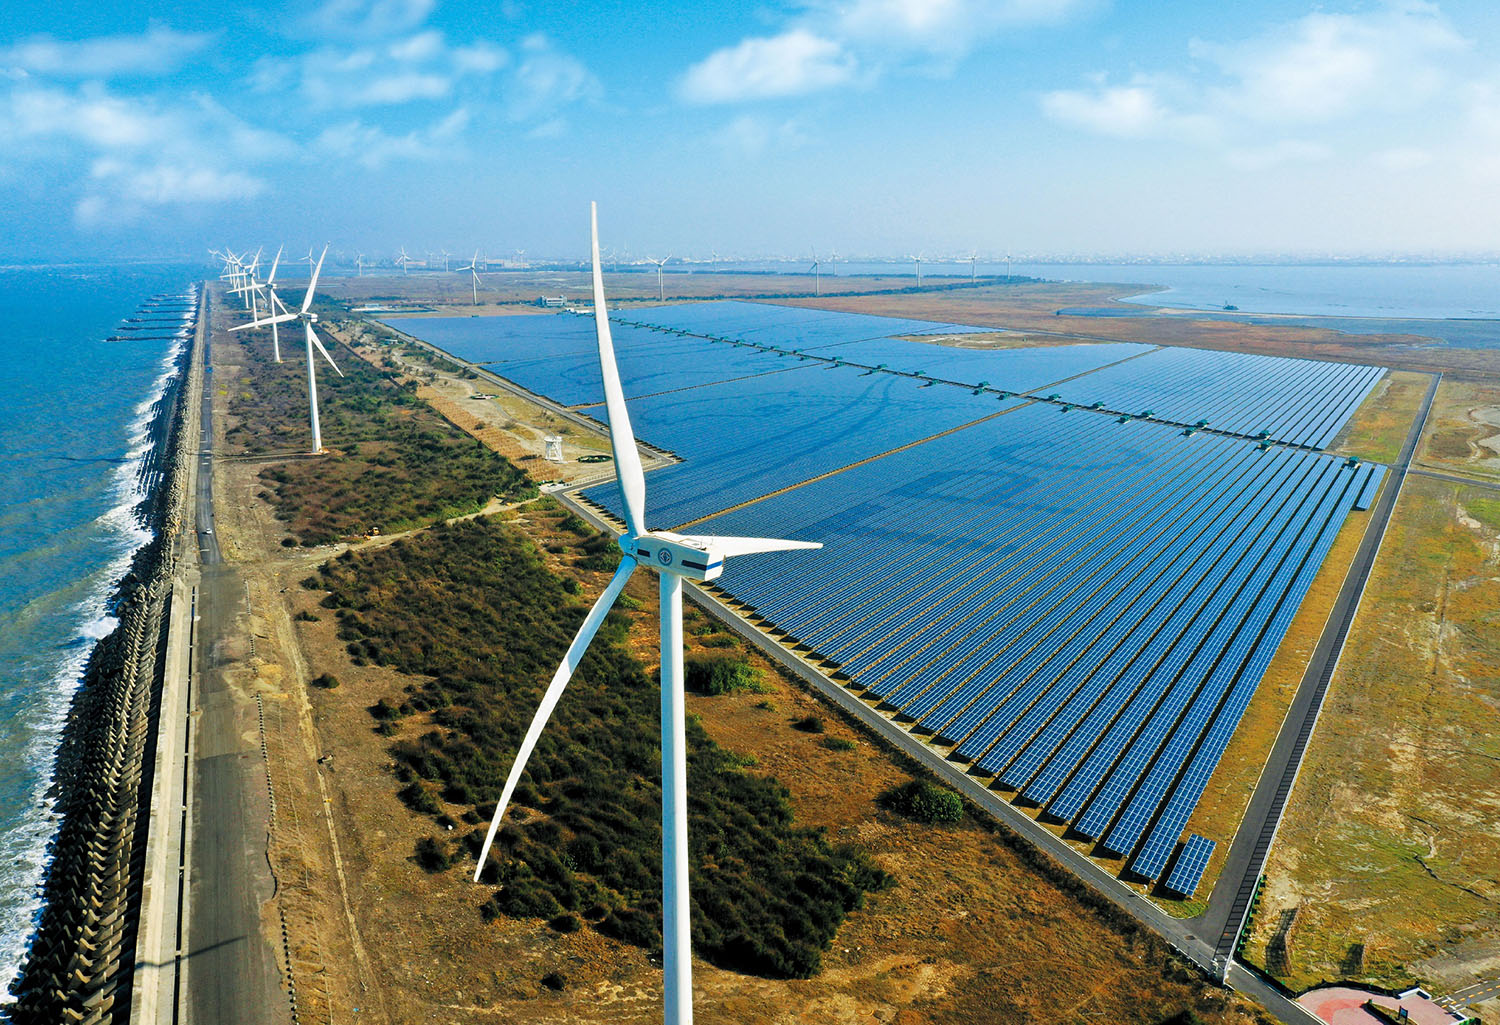  綠能成為擴大減煤的重要助力，包括近期風力發電屢創新高，結合太陽光電出力甚至一度高達800萬瓩以上。 綠能成為擴大減煤的重要助力，包括近期風力發電屢創新高，結合太陽光電出力甚至一度高達800萬瓩以上。